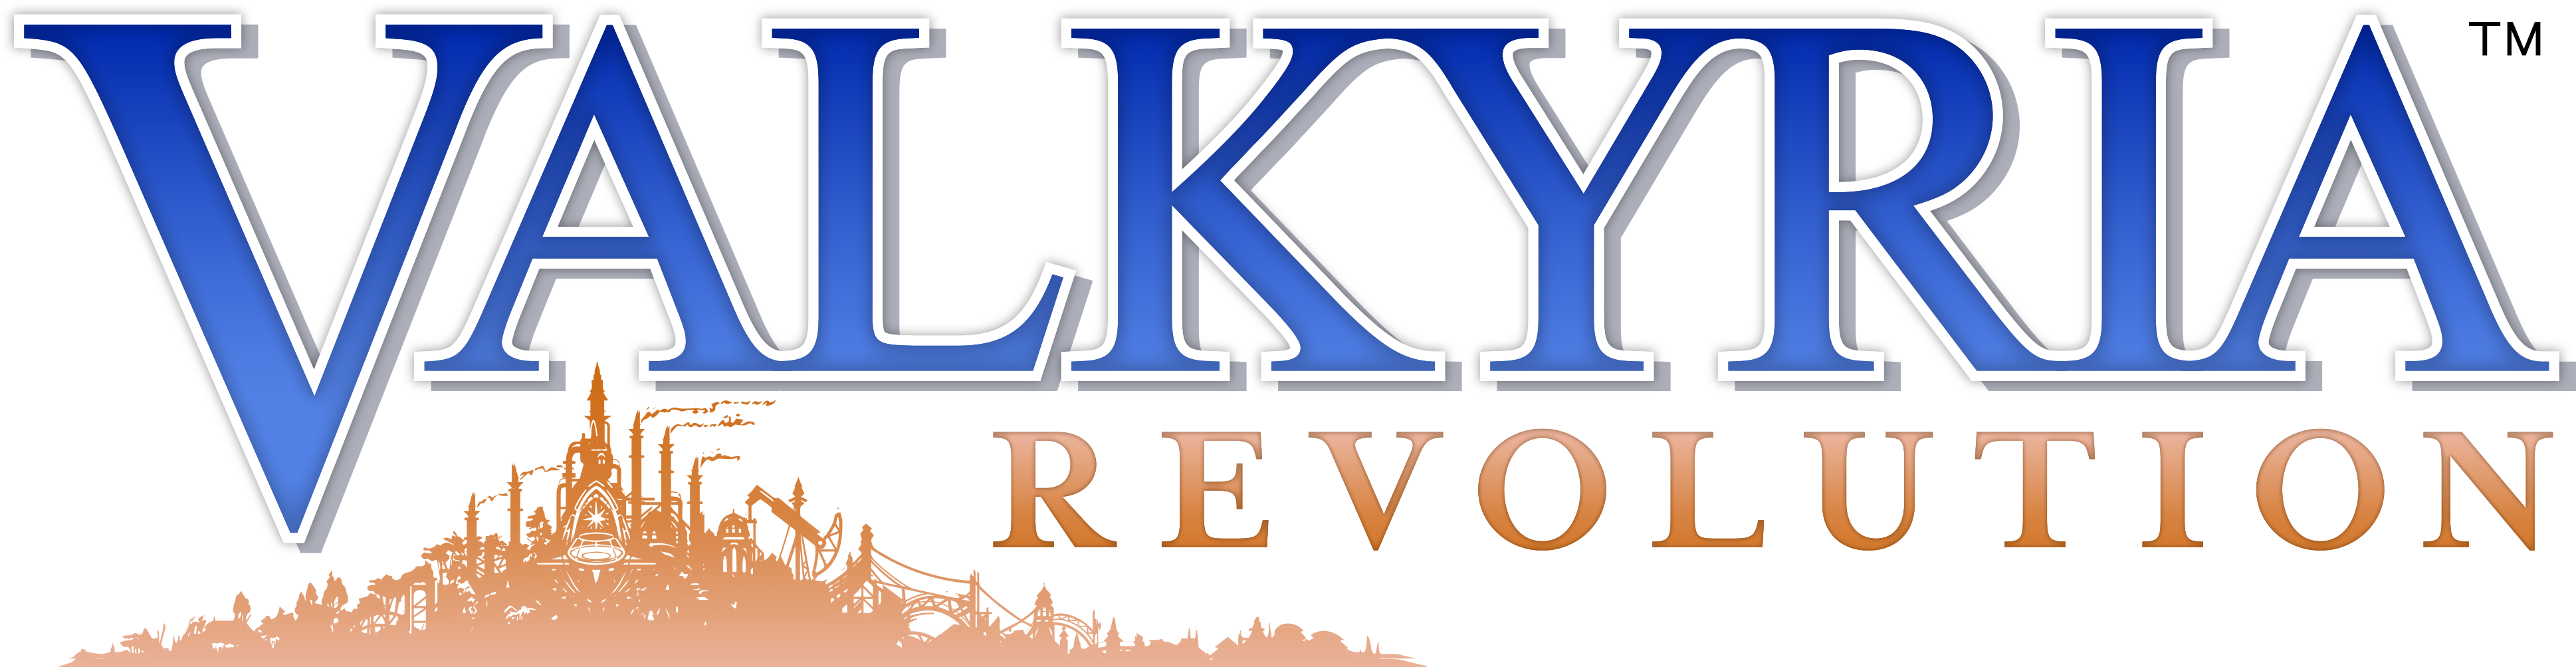 Valkyria_ Revolution_ Logo PNG image